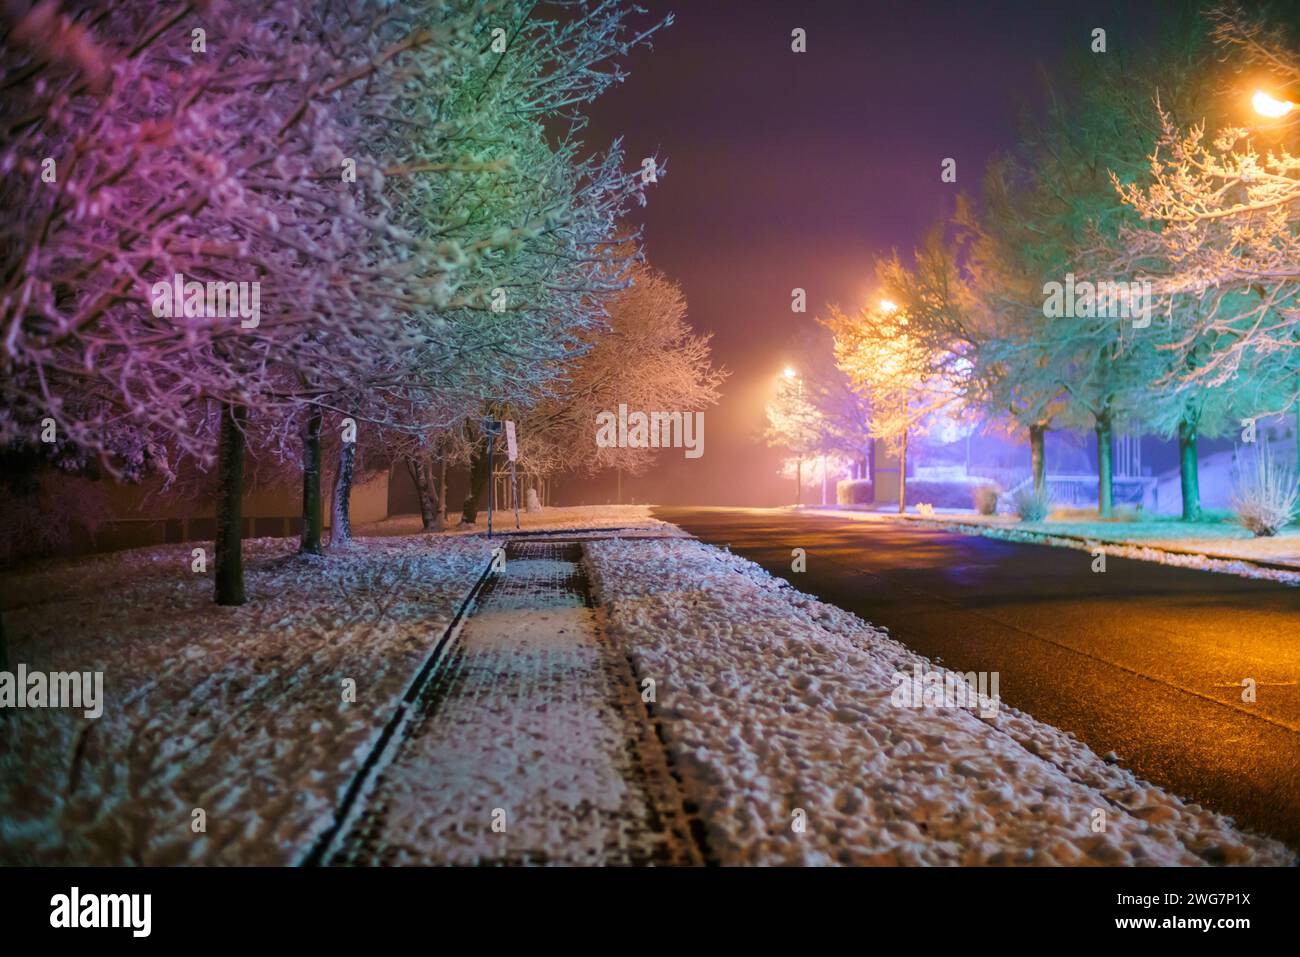 paisaje de una ciudad nocturna de invierno coloreada con iluminaciones multicolores Foto de stock